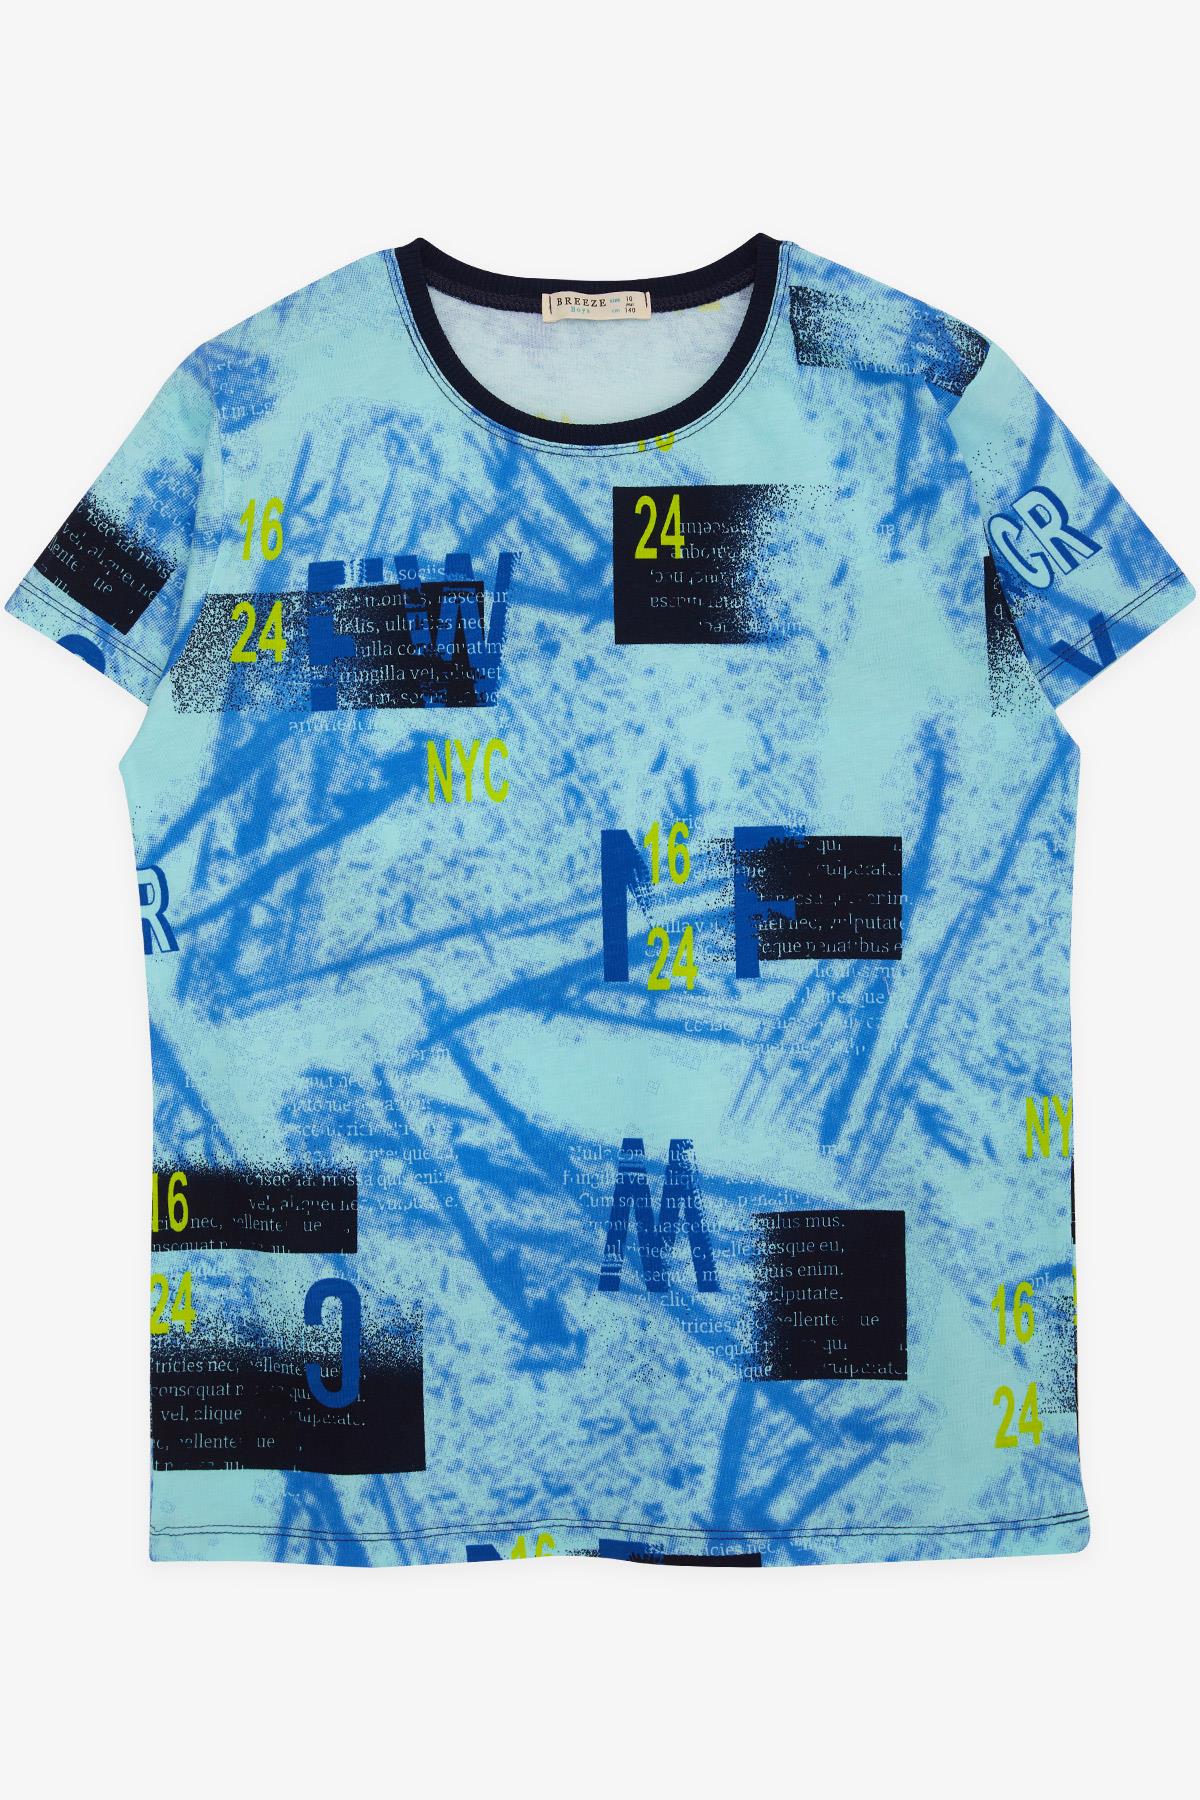 Erkek Çocuk Tişört Rakam Ve Yazı Desenli Mavi 9-11 Yaş - Yazlık Tişört  Modelleri | Breeze